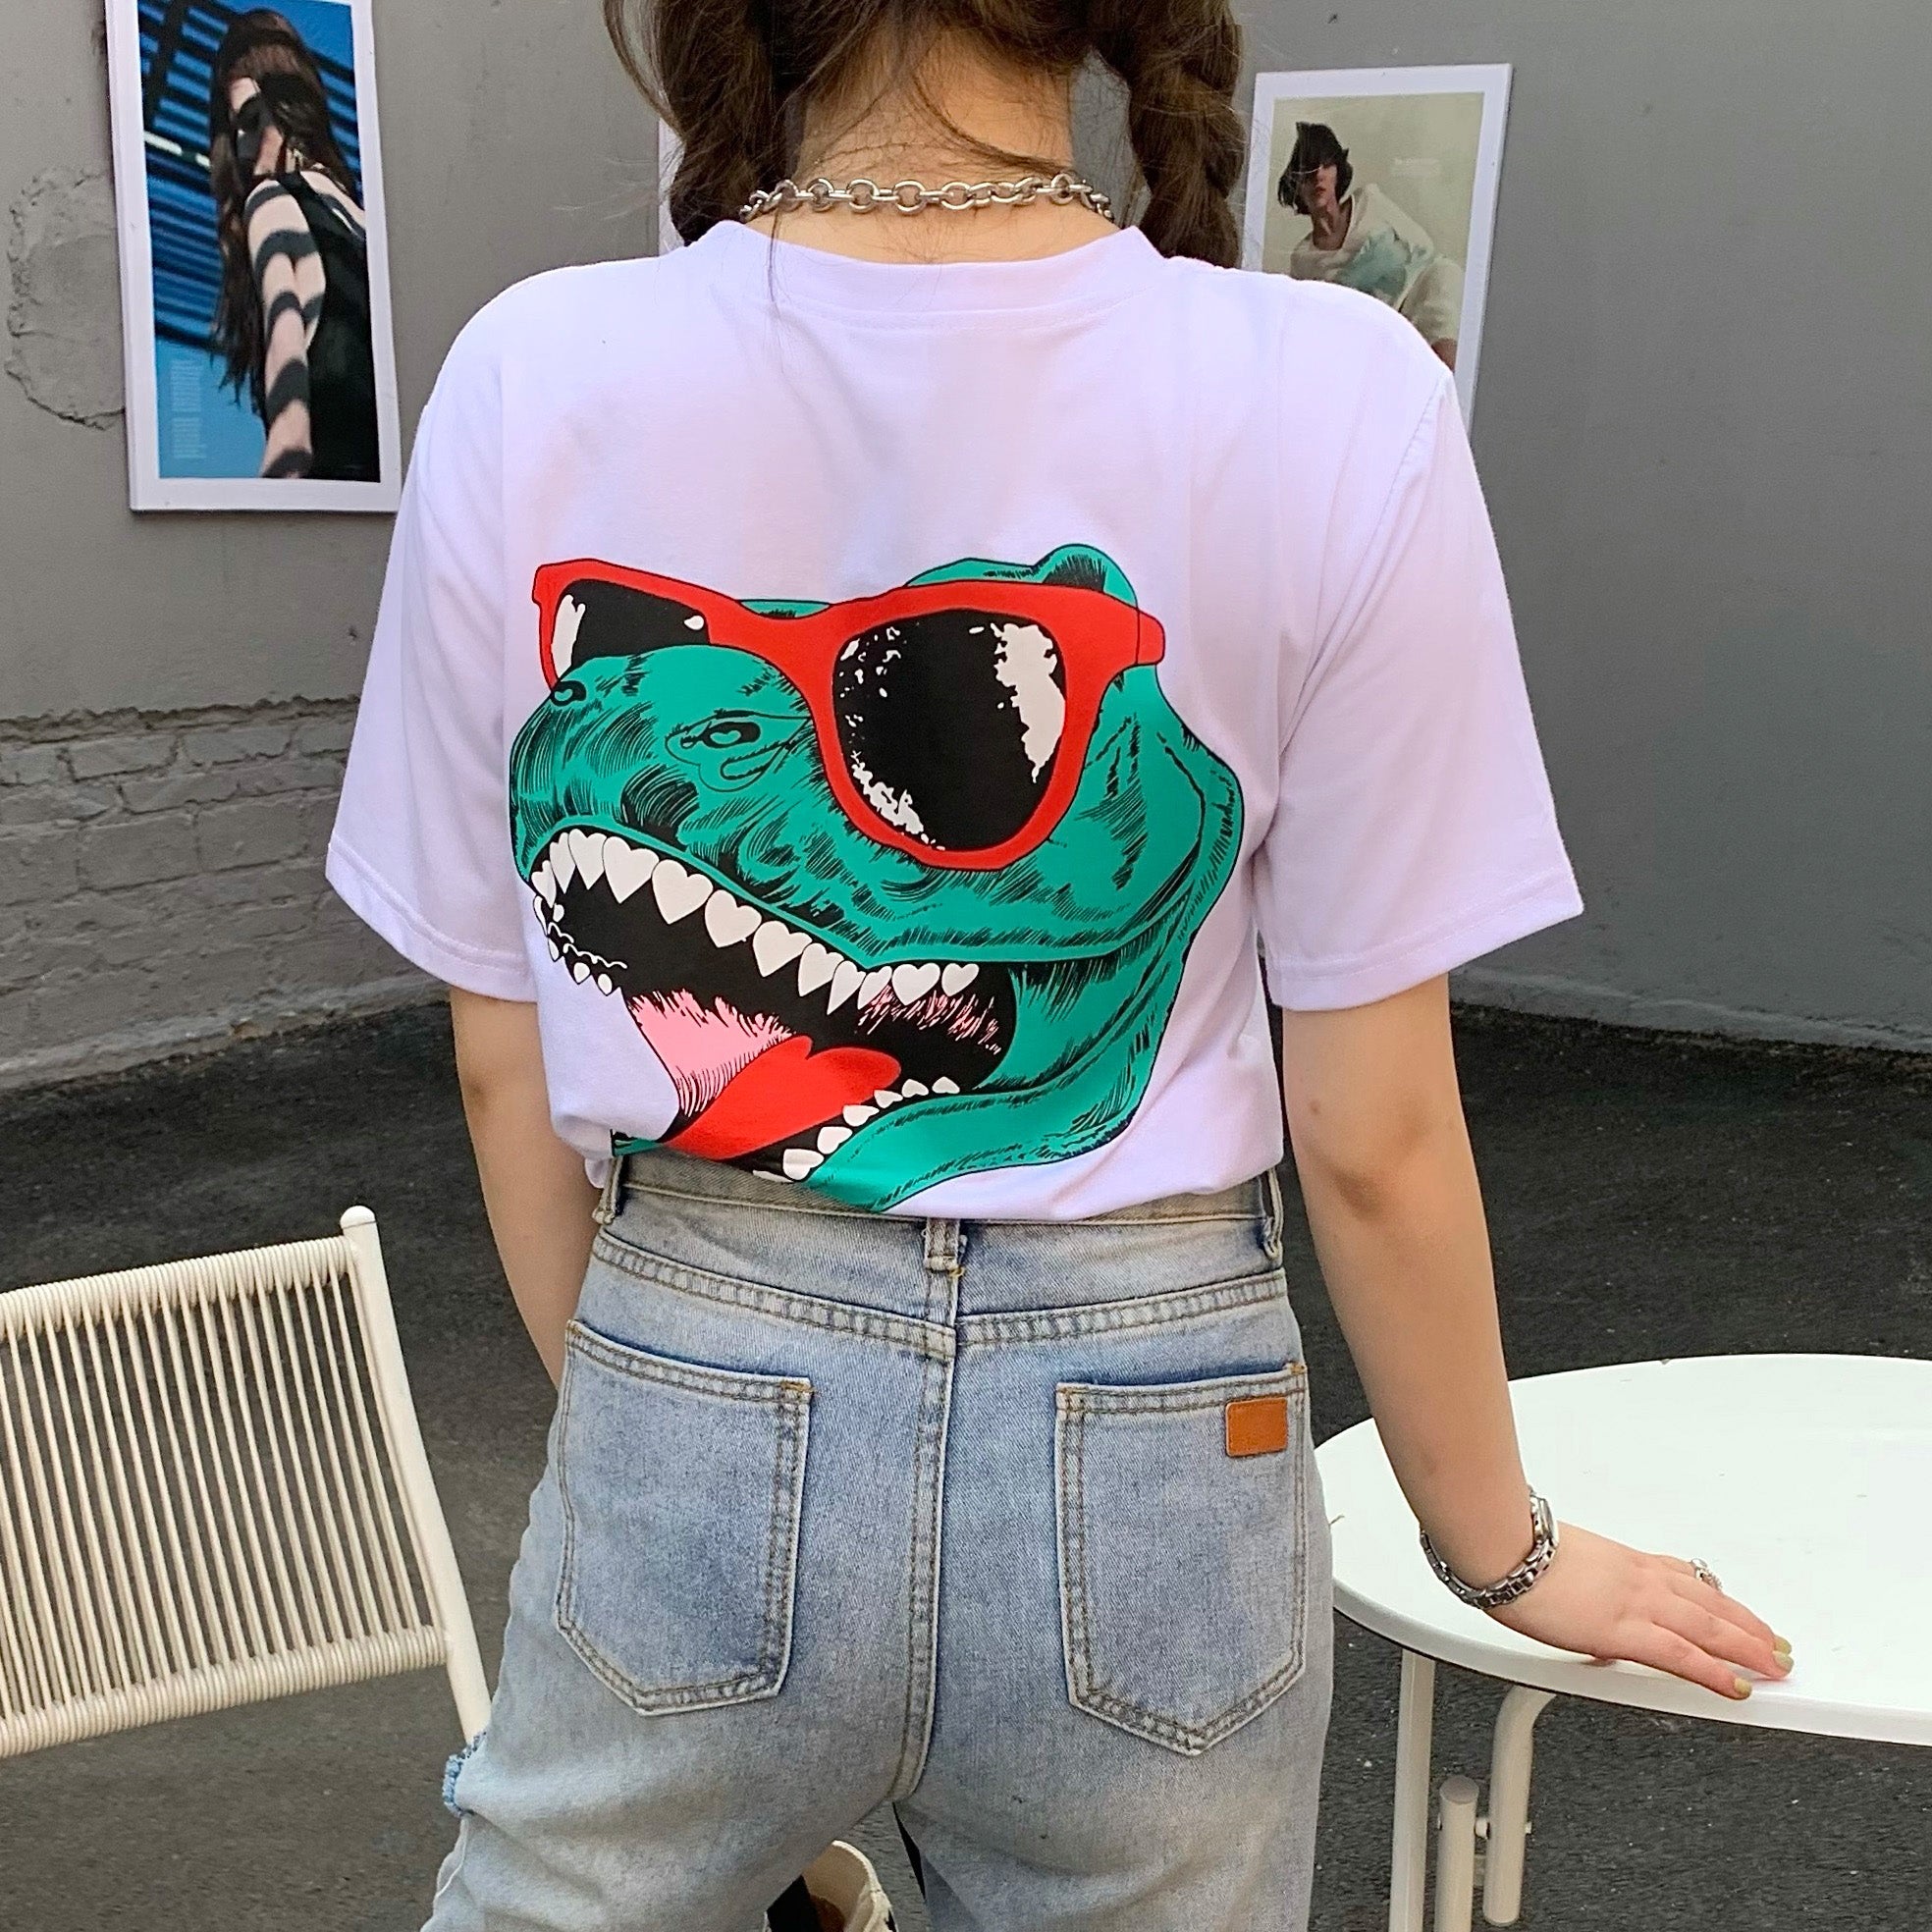 恐竜プリント半袖Tシャツカットソー 春夏 韓国ファッション